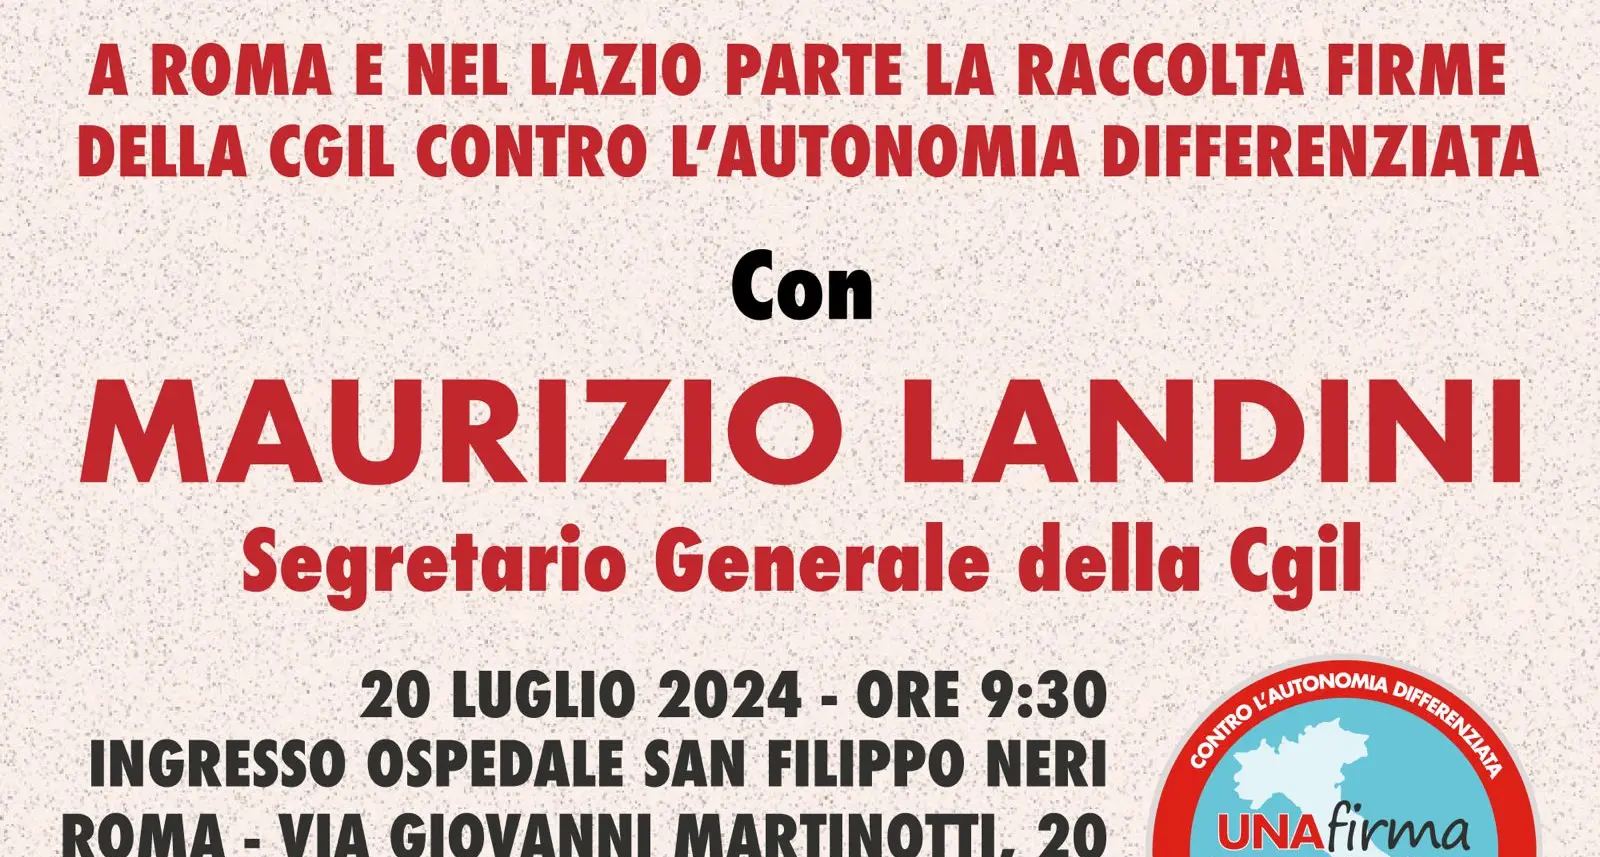 ‘Una firma per l’Italia’. A Roma e nel Lazio parte la raccolta firme per il referendum contro l’Autonomia differenziata